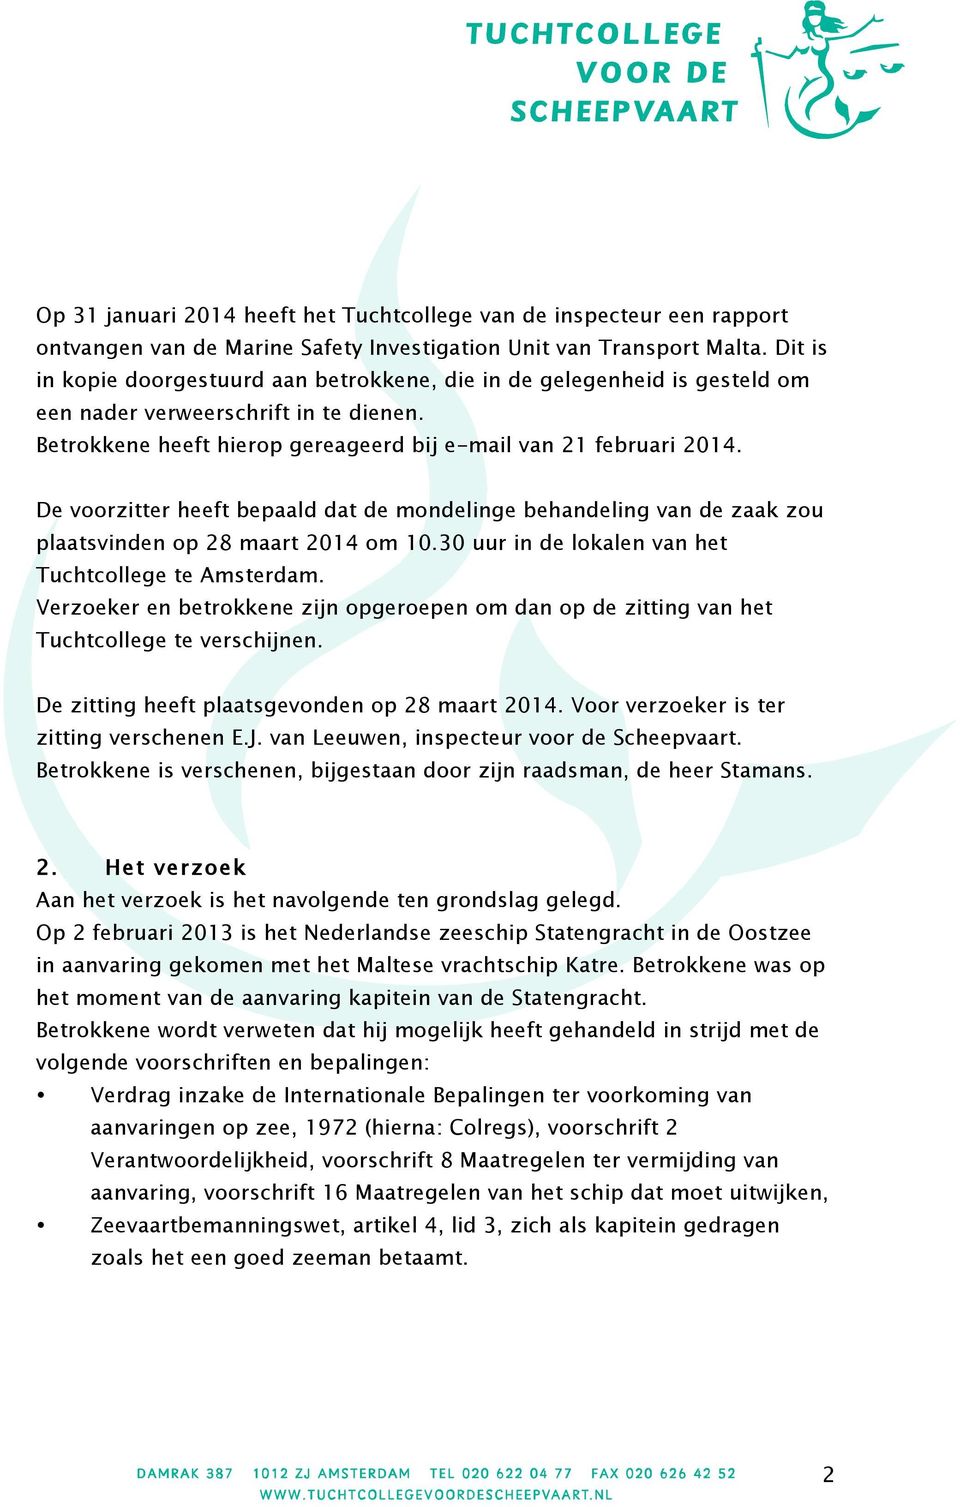 De voorzitter heeft bepaald dat de mondelinge behandeling van de zaak zou plaatsvinden op 28 maart 2014 om 10.30 uur in de lokalen van het Tuchtcollege te Amsterdam.